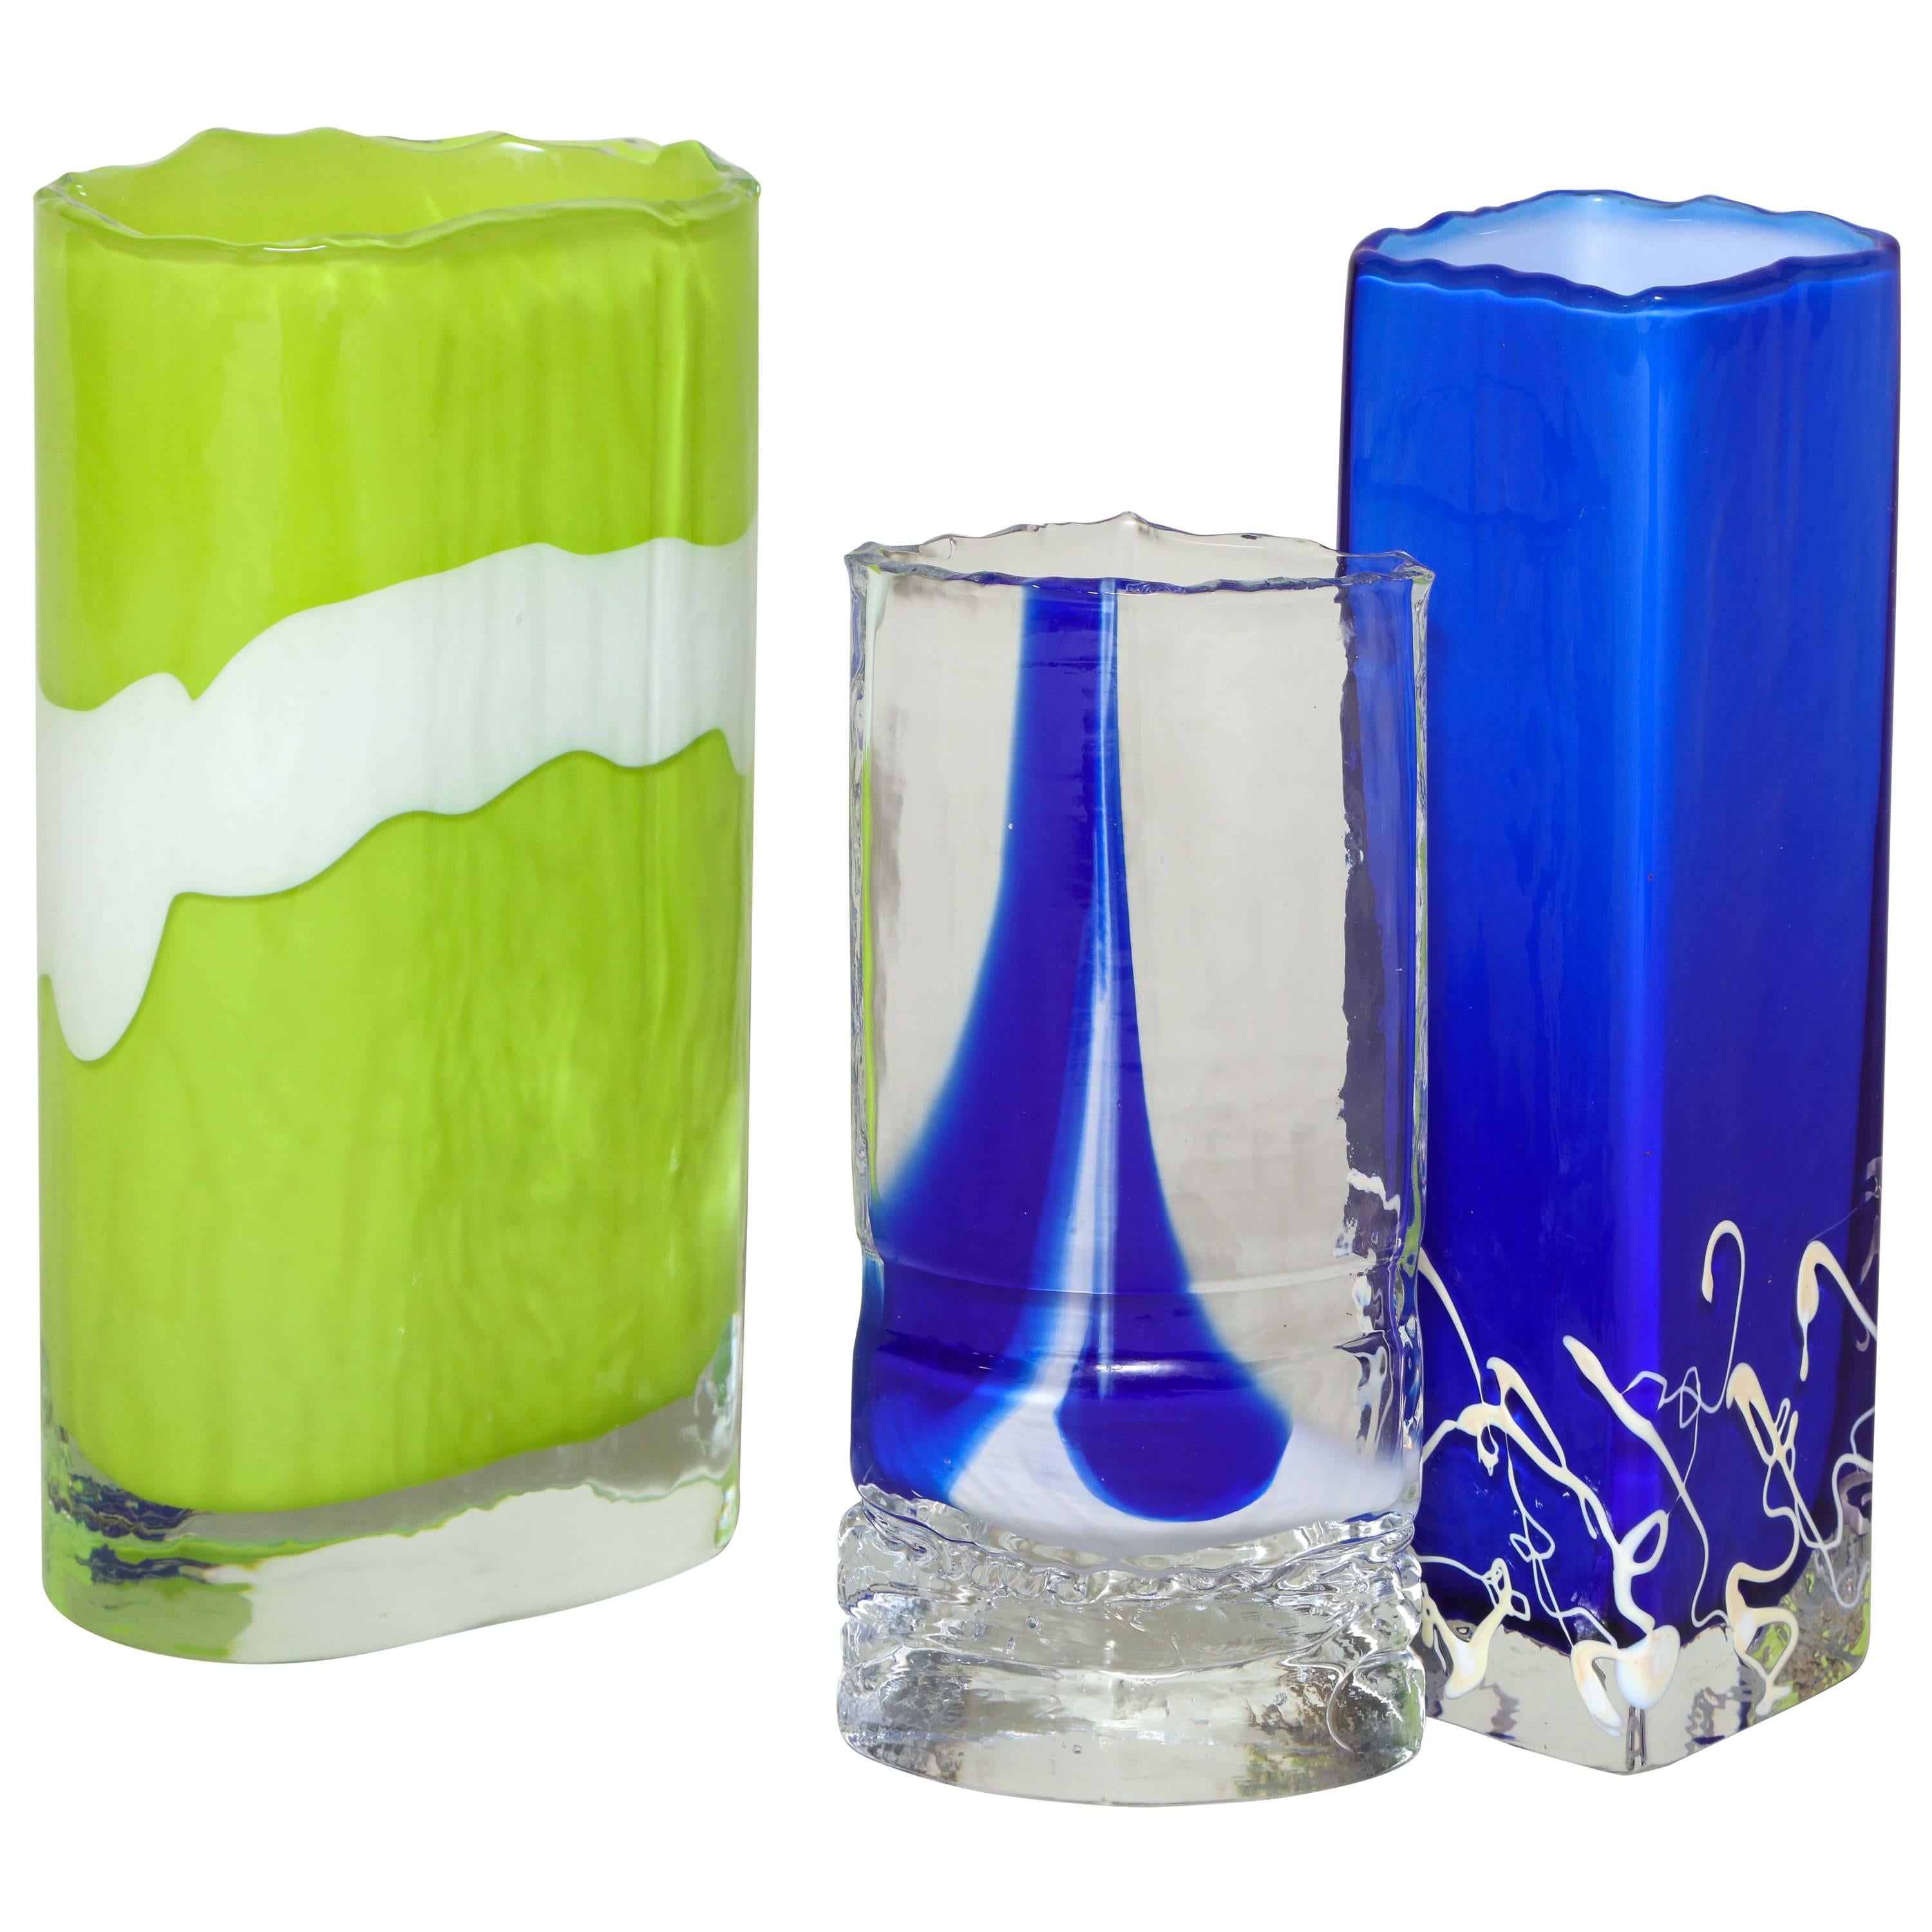 Collection de vases sculpturaux en verre aux couleurs vives